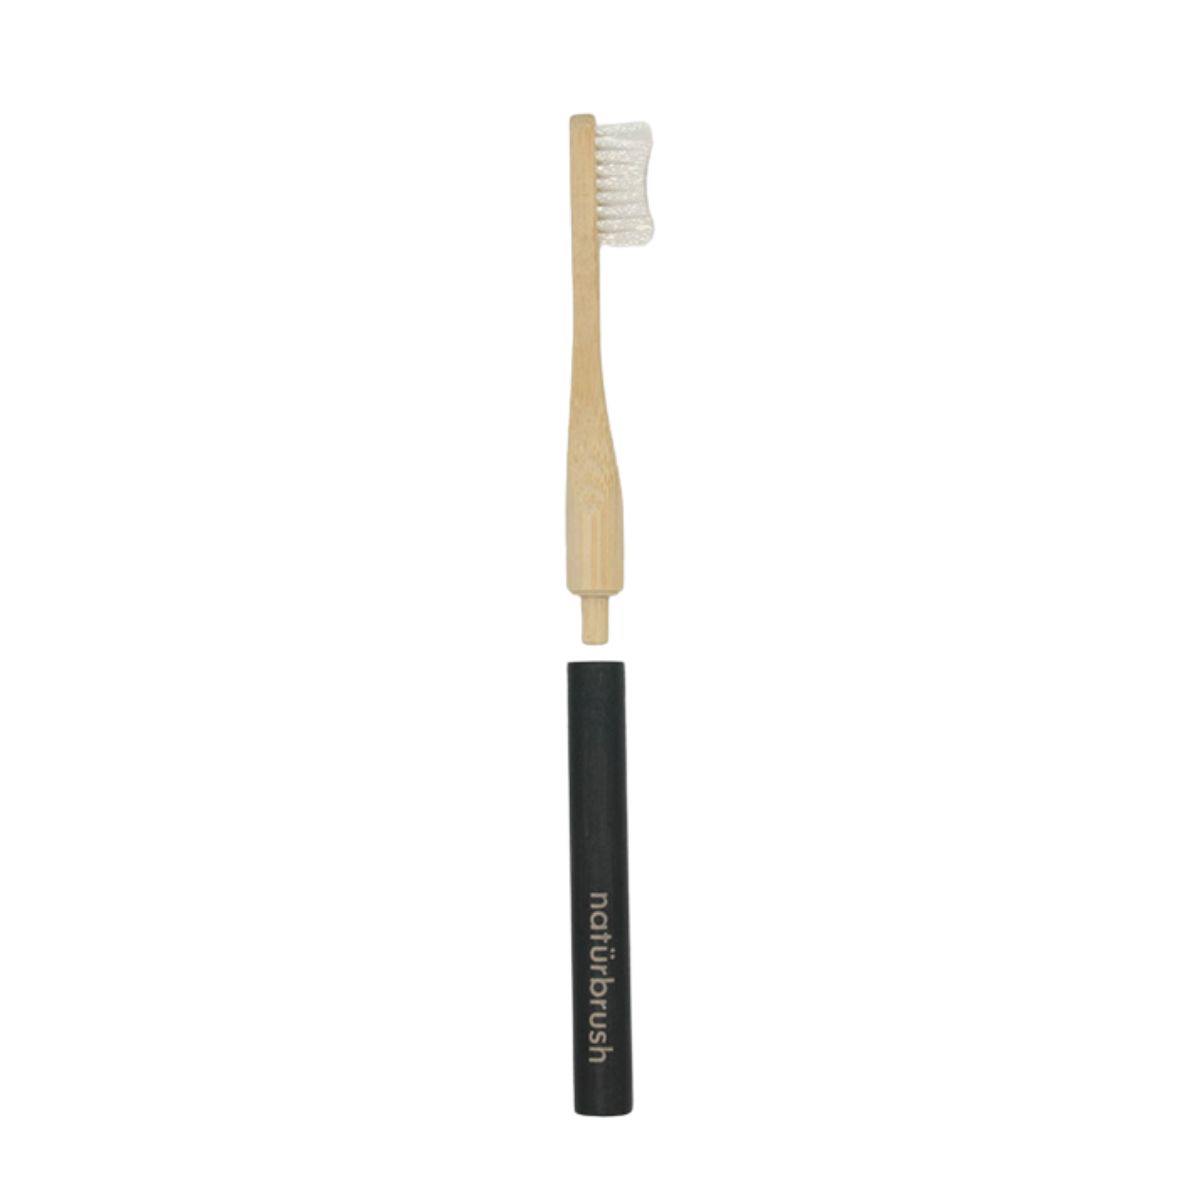 Cepillo de dientes negro de bambú con cabezal intercambiable ecológico cerrado